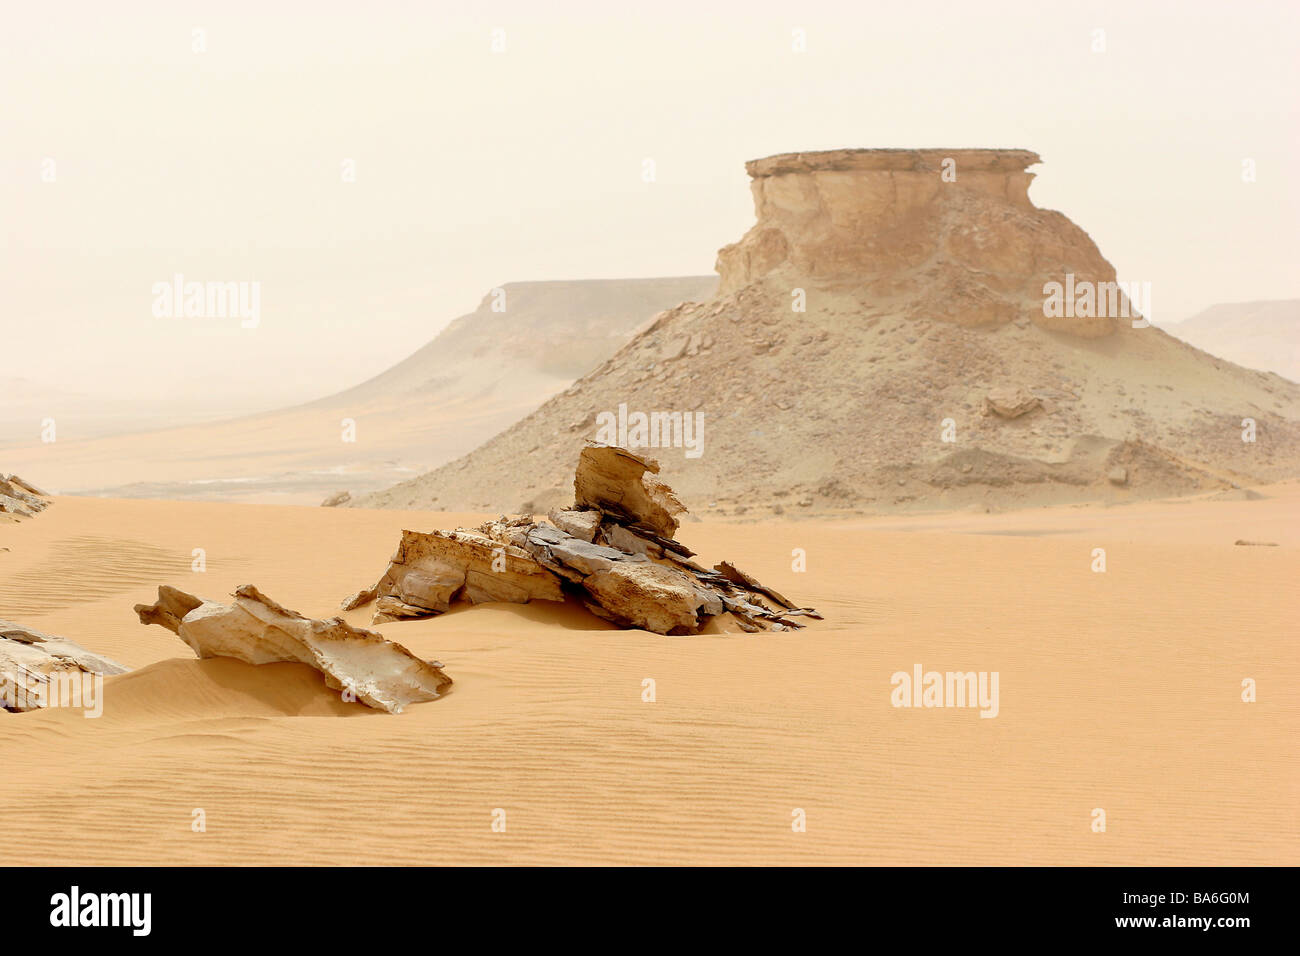 Ägypten-Libysche Wüste Mesa Natur Leben-negativ Vegetation locker Hitze Trockenheit staubigen sandigen weite menschlichen leer Entfernung Stockfoto